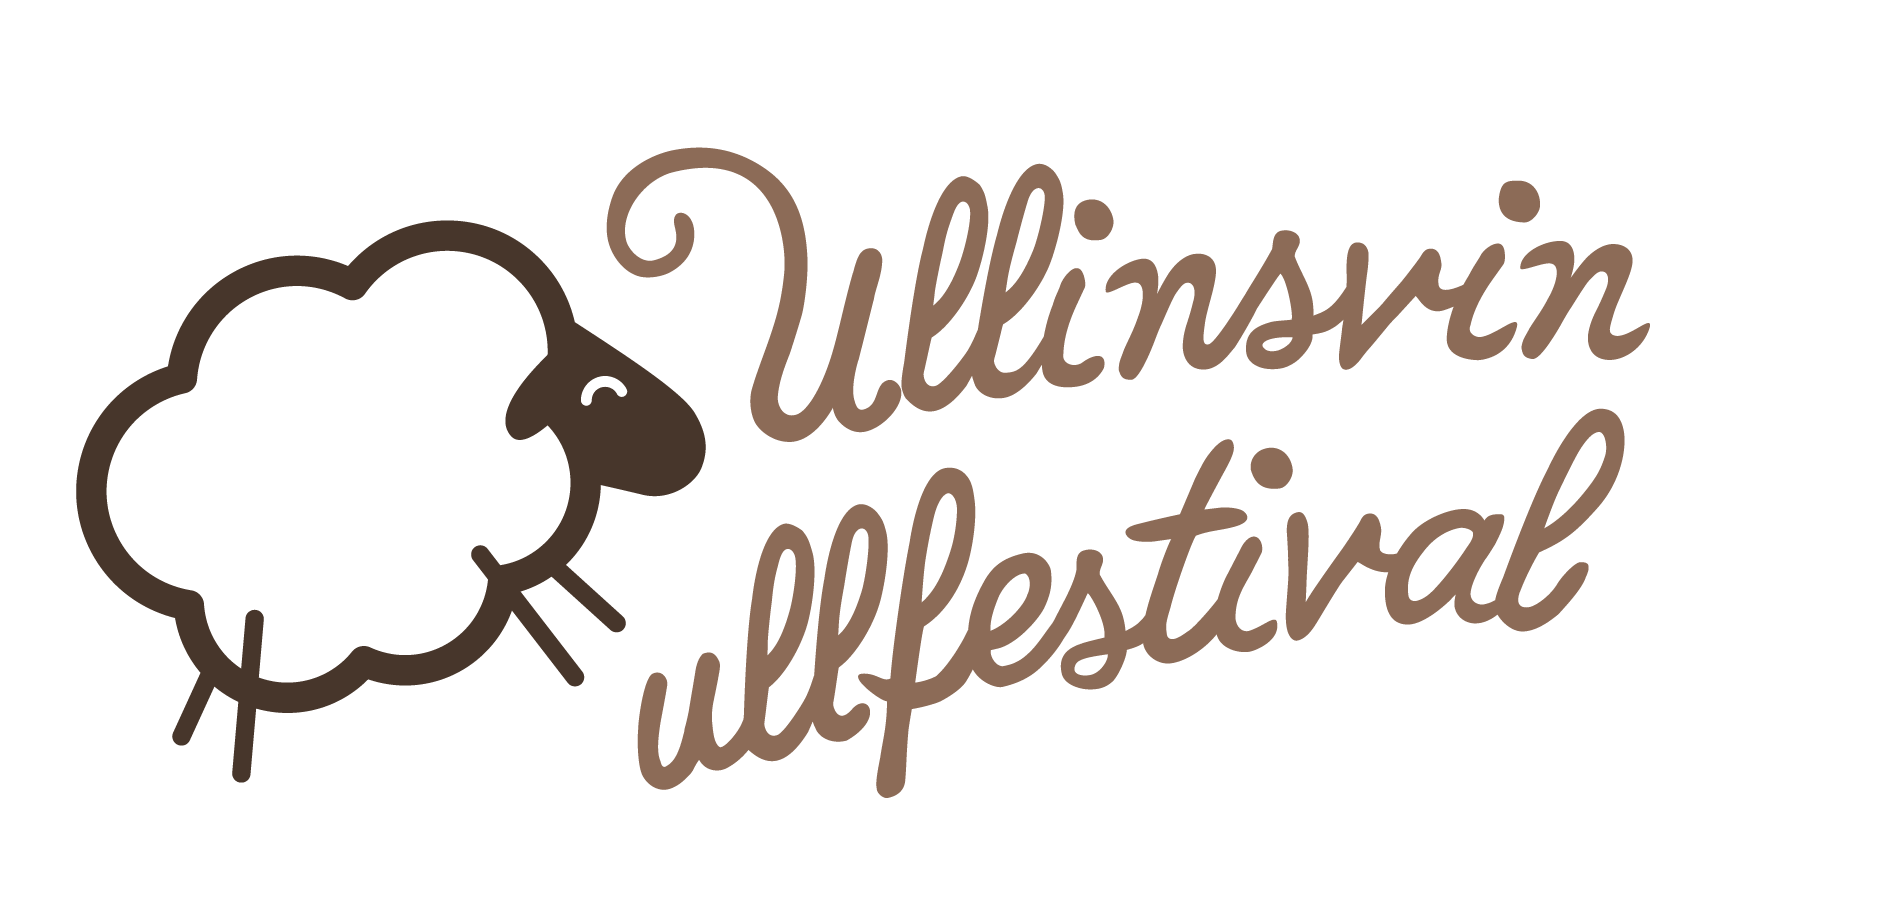 Ullinsvin Ullfestival